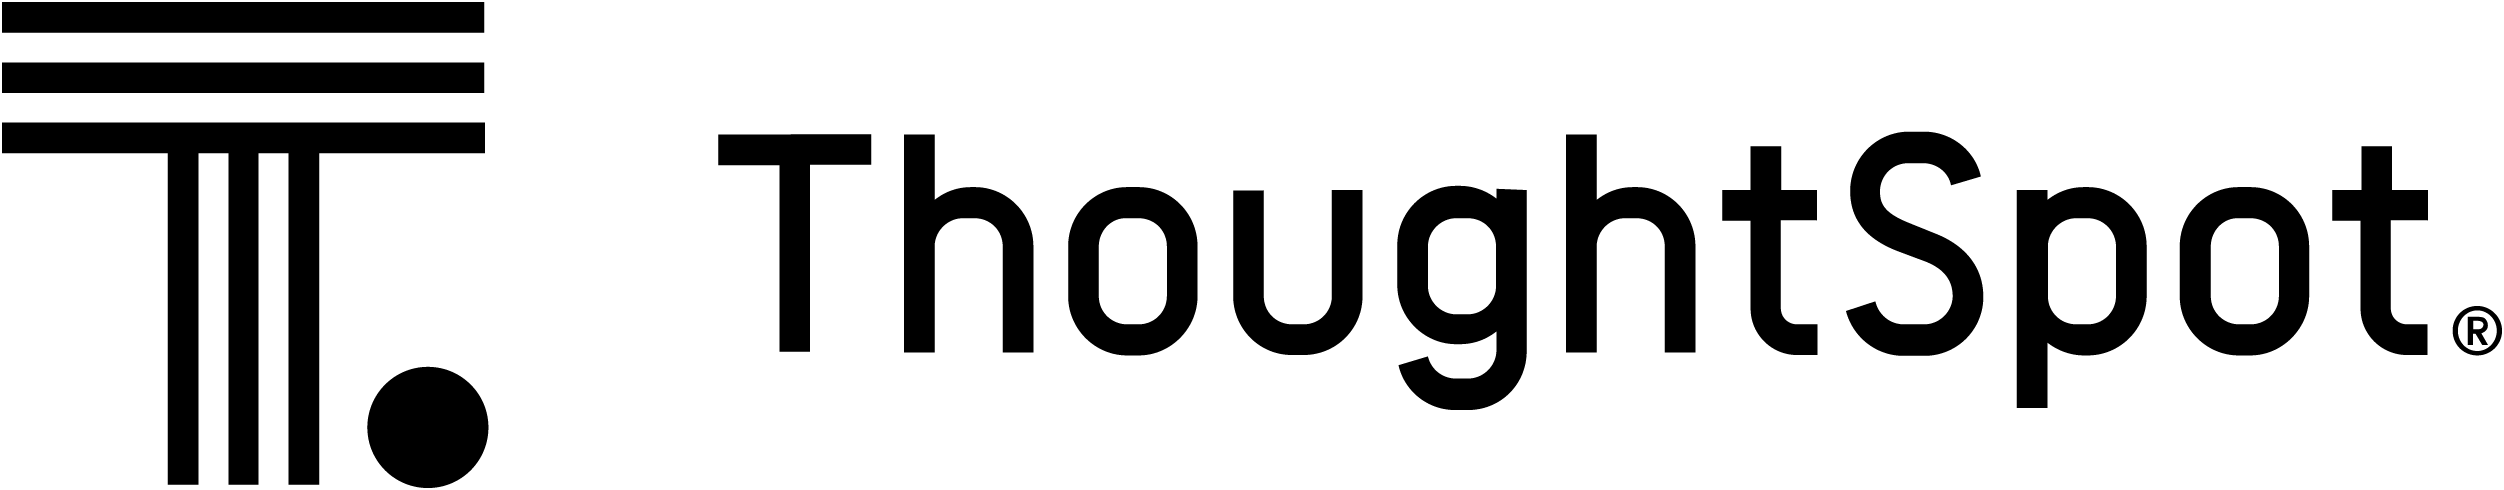 thoughtspot-vector-logo-2022 copy